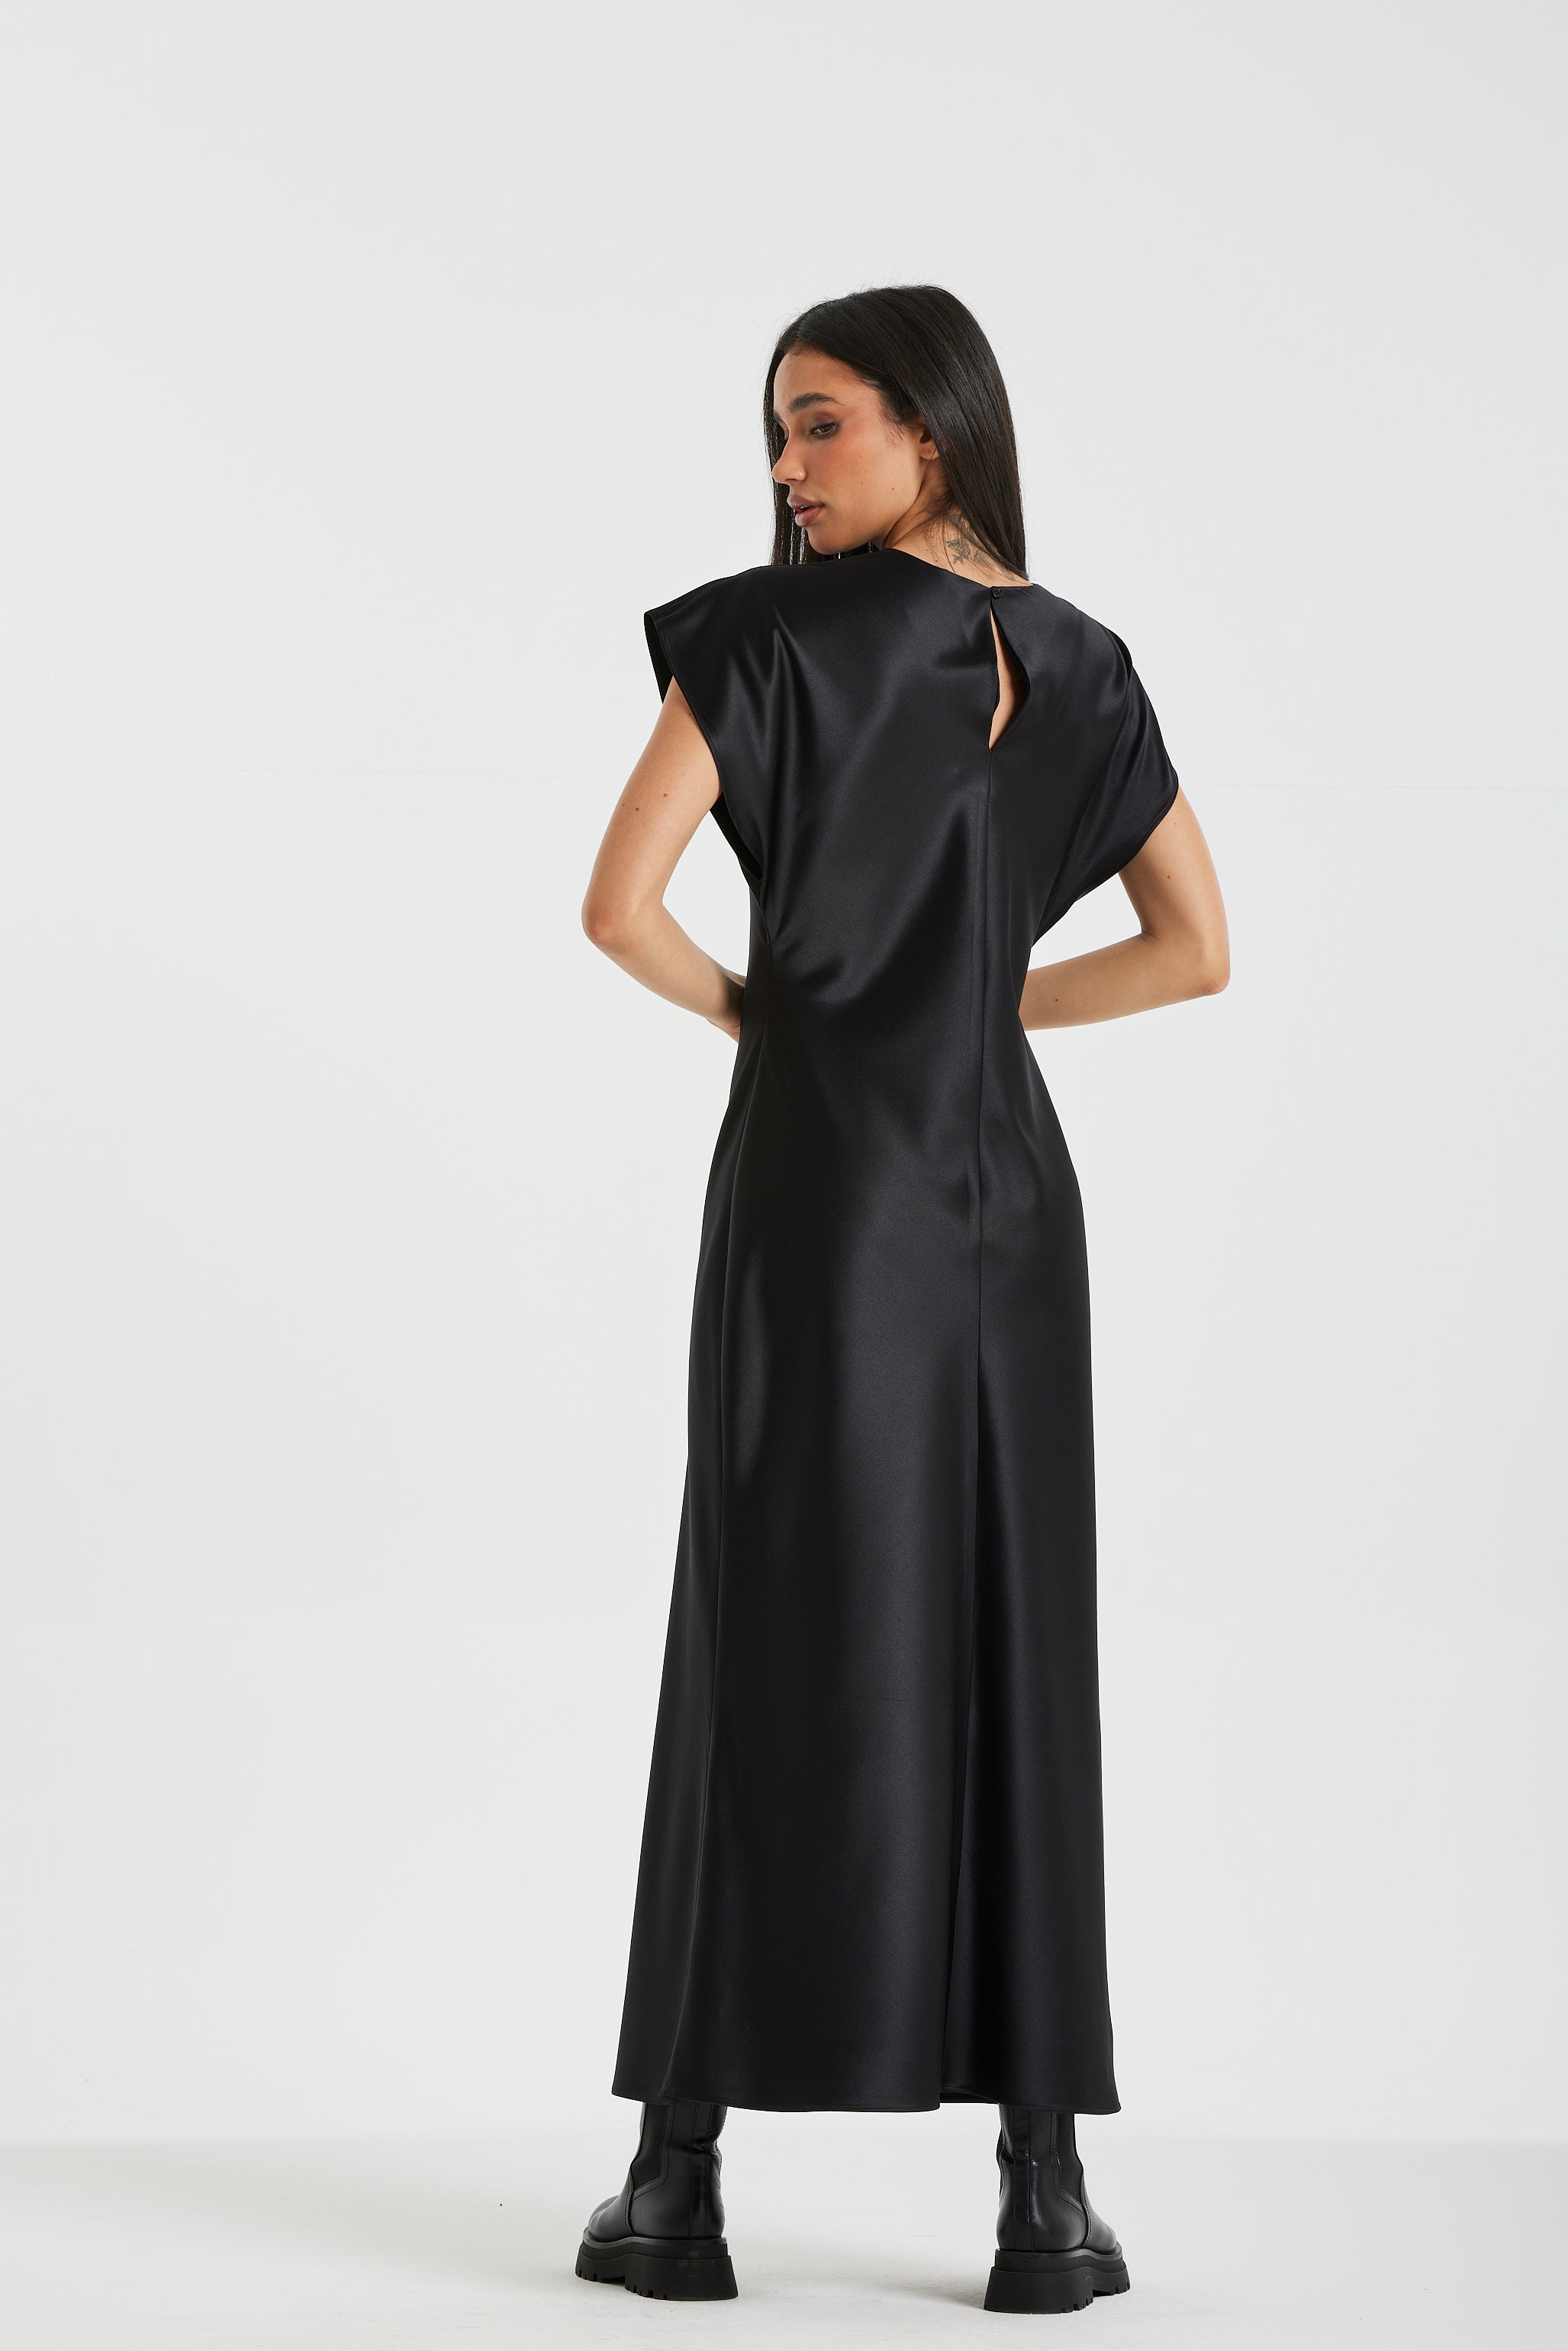 Satin Basic Black Dress